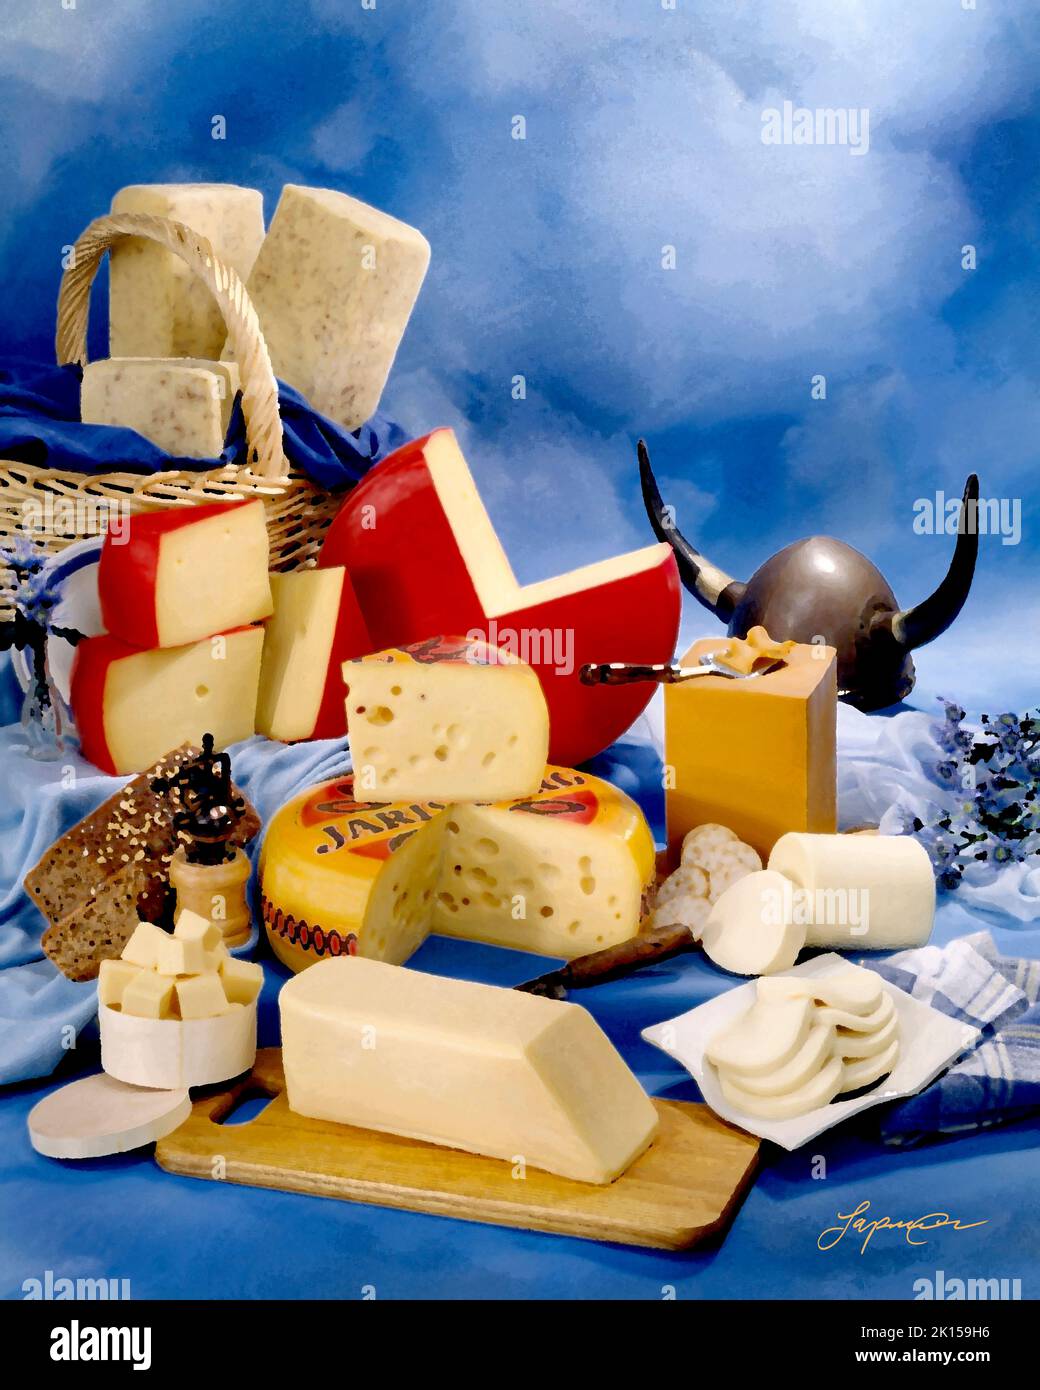 Skandinavischer Käse in Gruppenfoto, malerischer Filter angewendet. Blau getönter melierter Hintergrund. Studio-Tischplatte, klassisches Bild Stockfoto